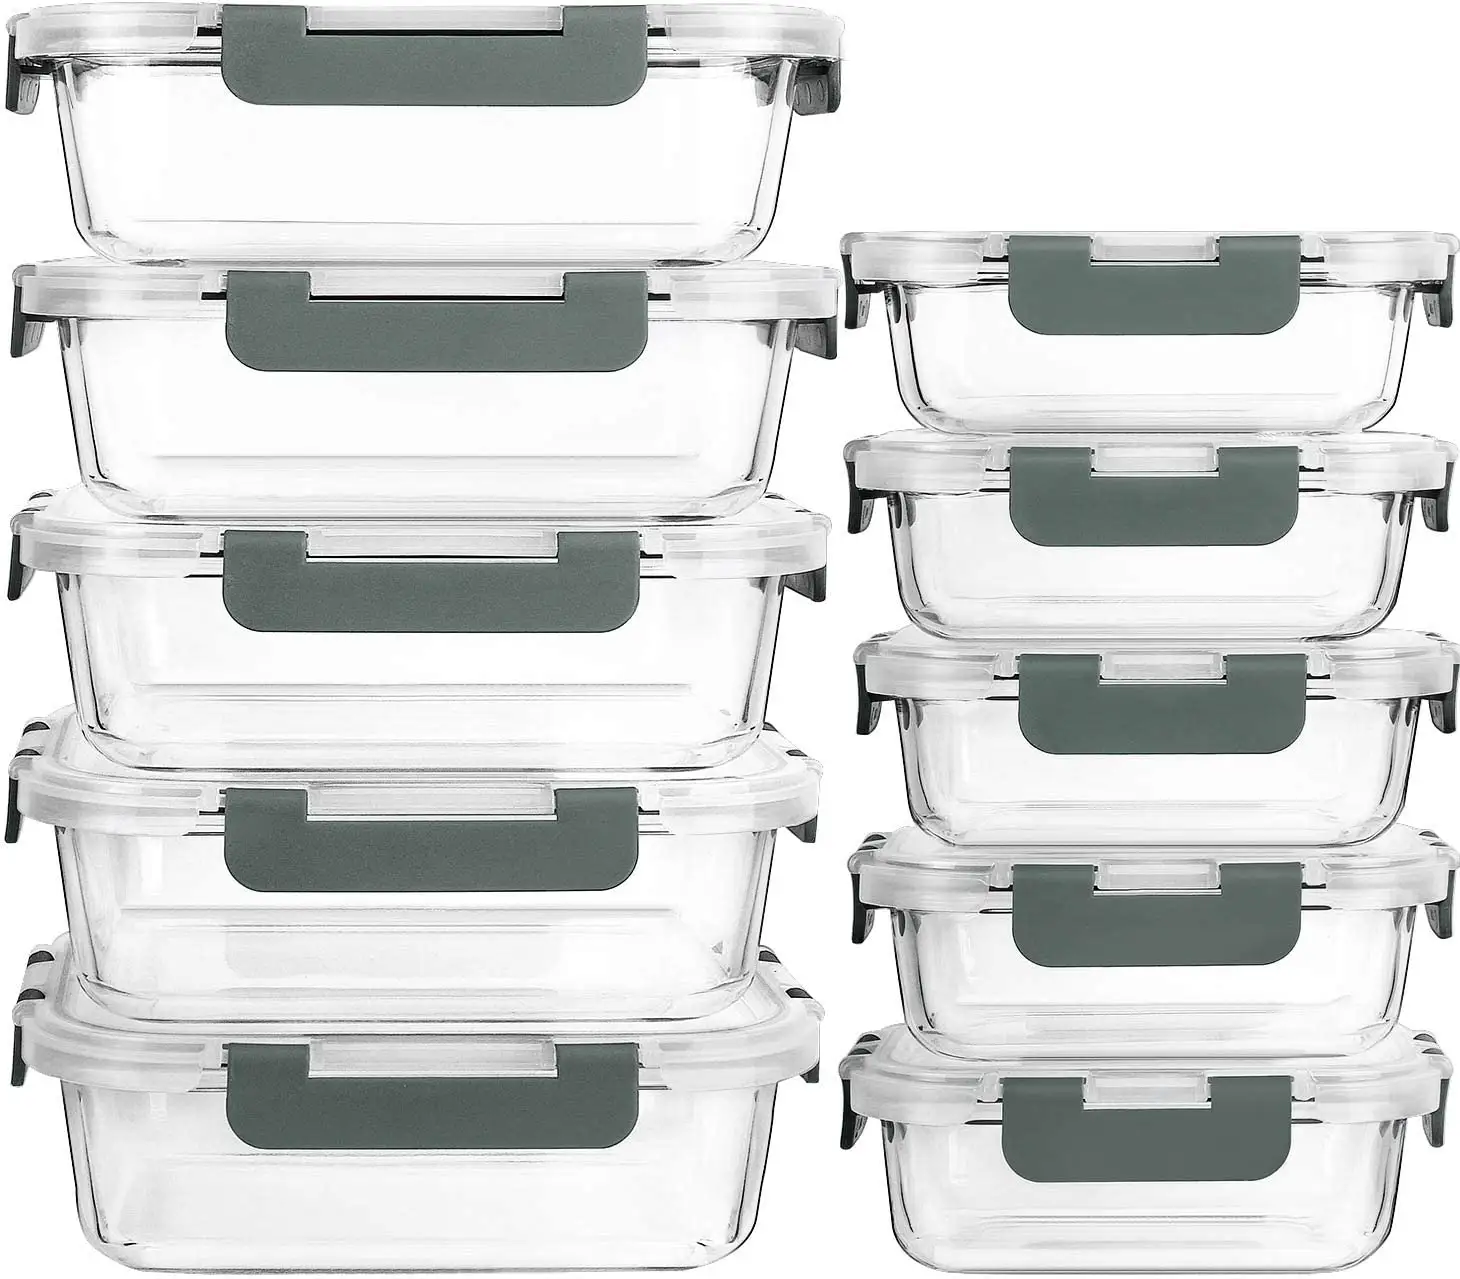 रसोई खाद्य तस्वीर ताला माइक्रोवेव Dishwasher ढक्कन के साथ वायुरोधी ग्लास भोजन प्रस्तुत करने का कंटेनरों